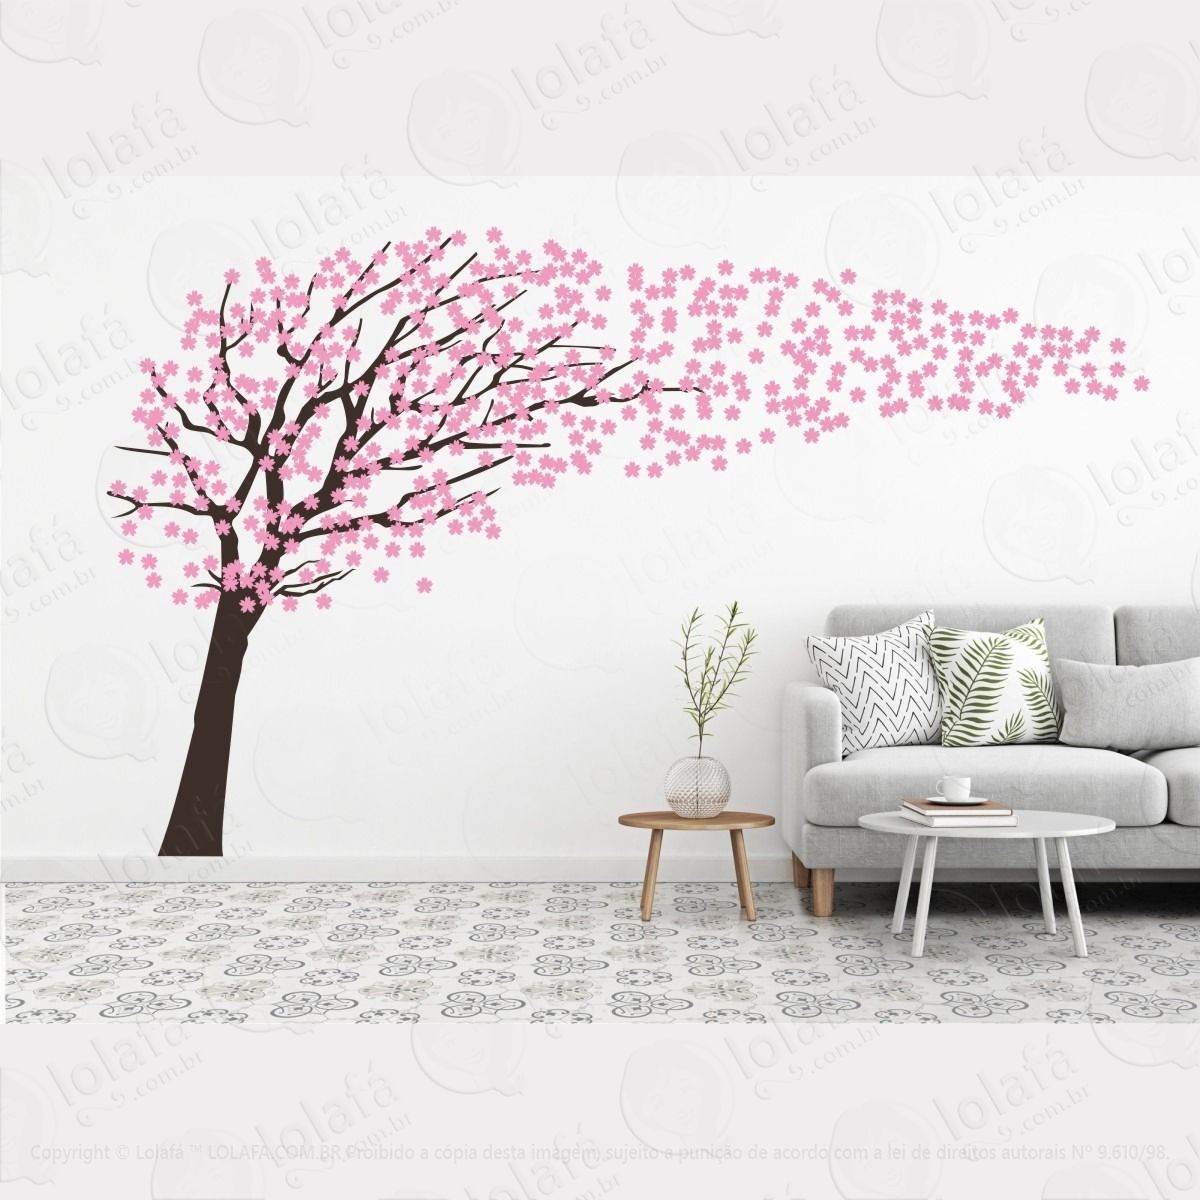 adesivos decorativos de parede - arvore cerejeira gigante mod:614